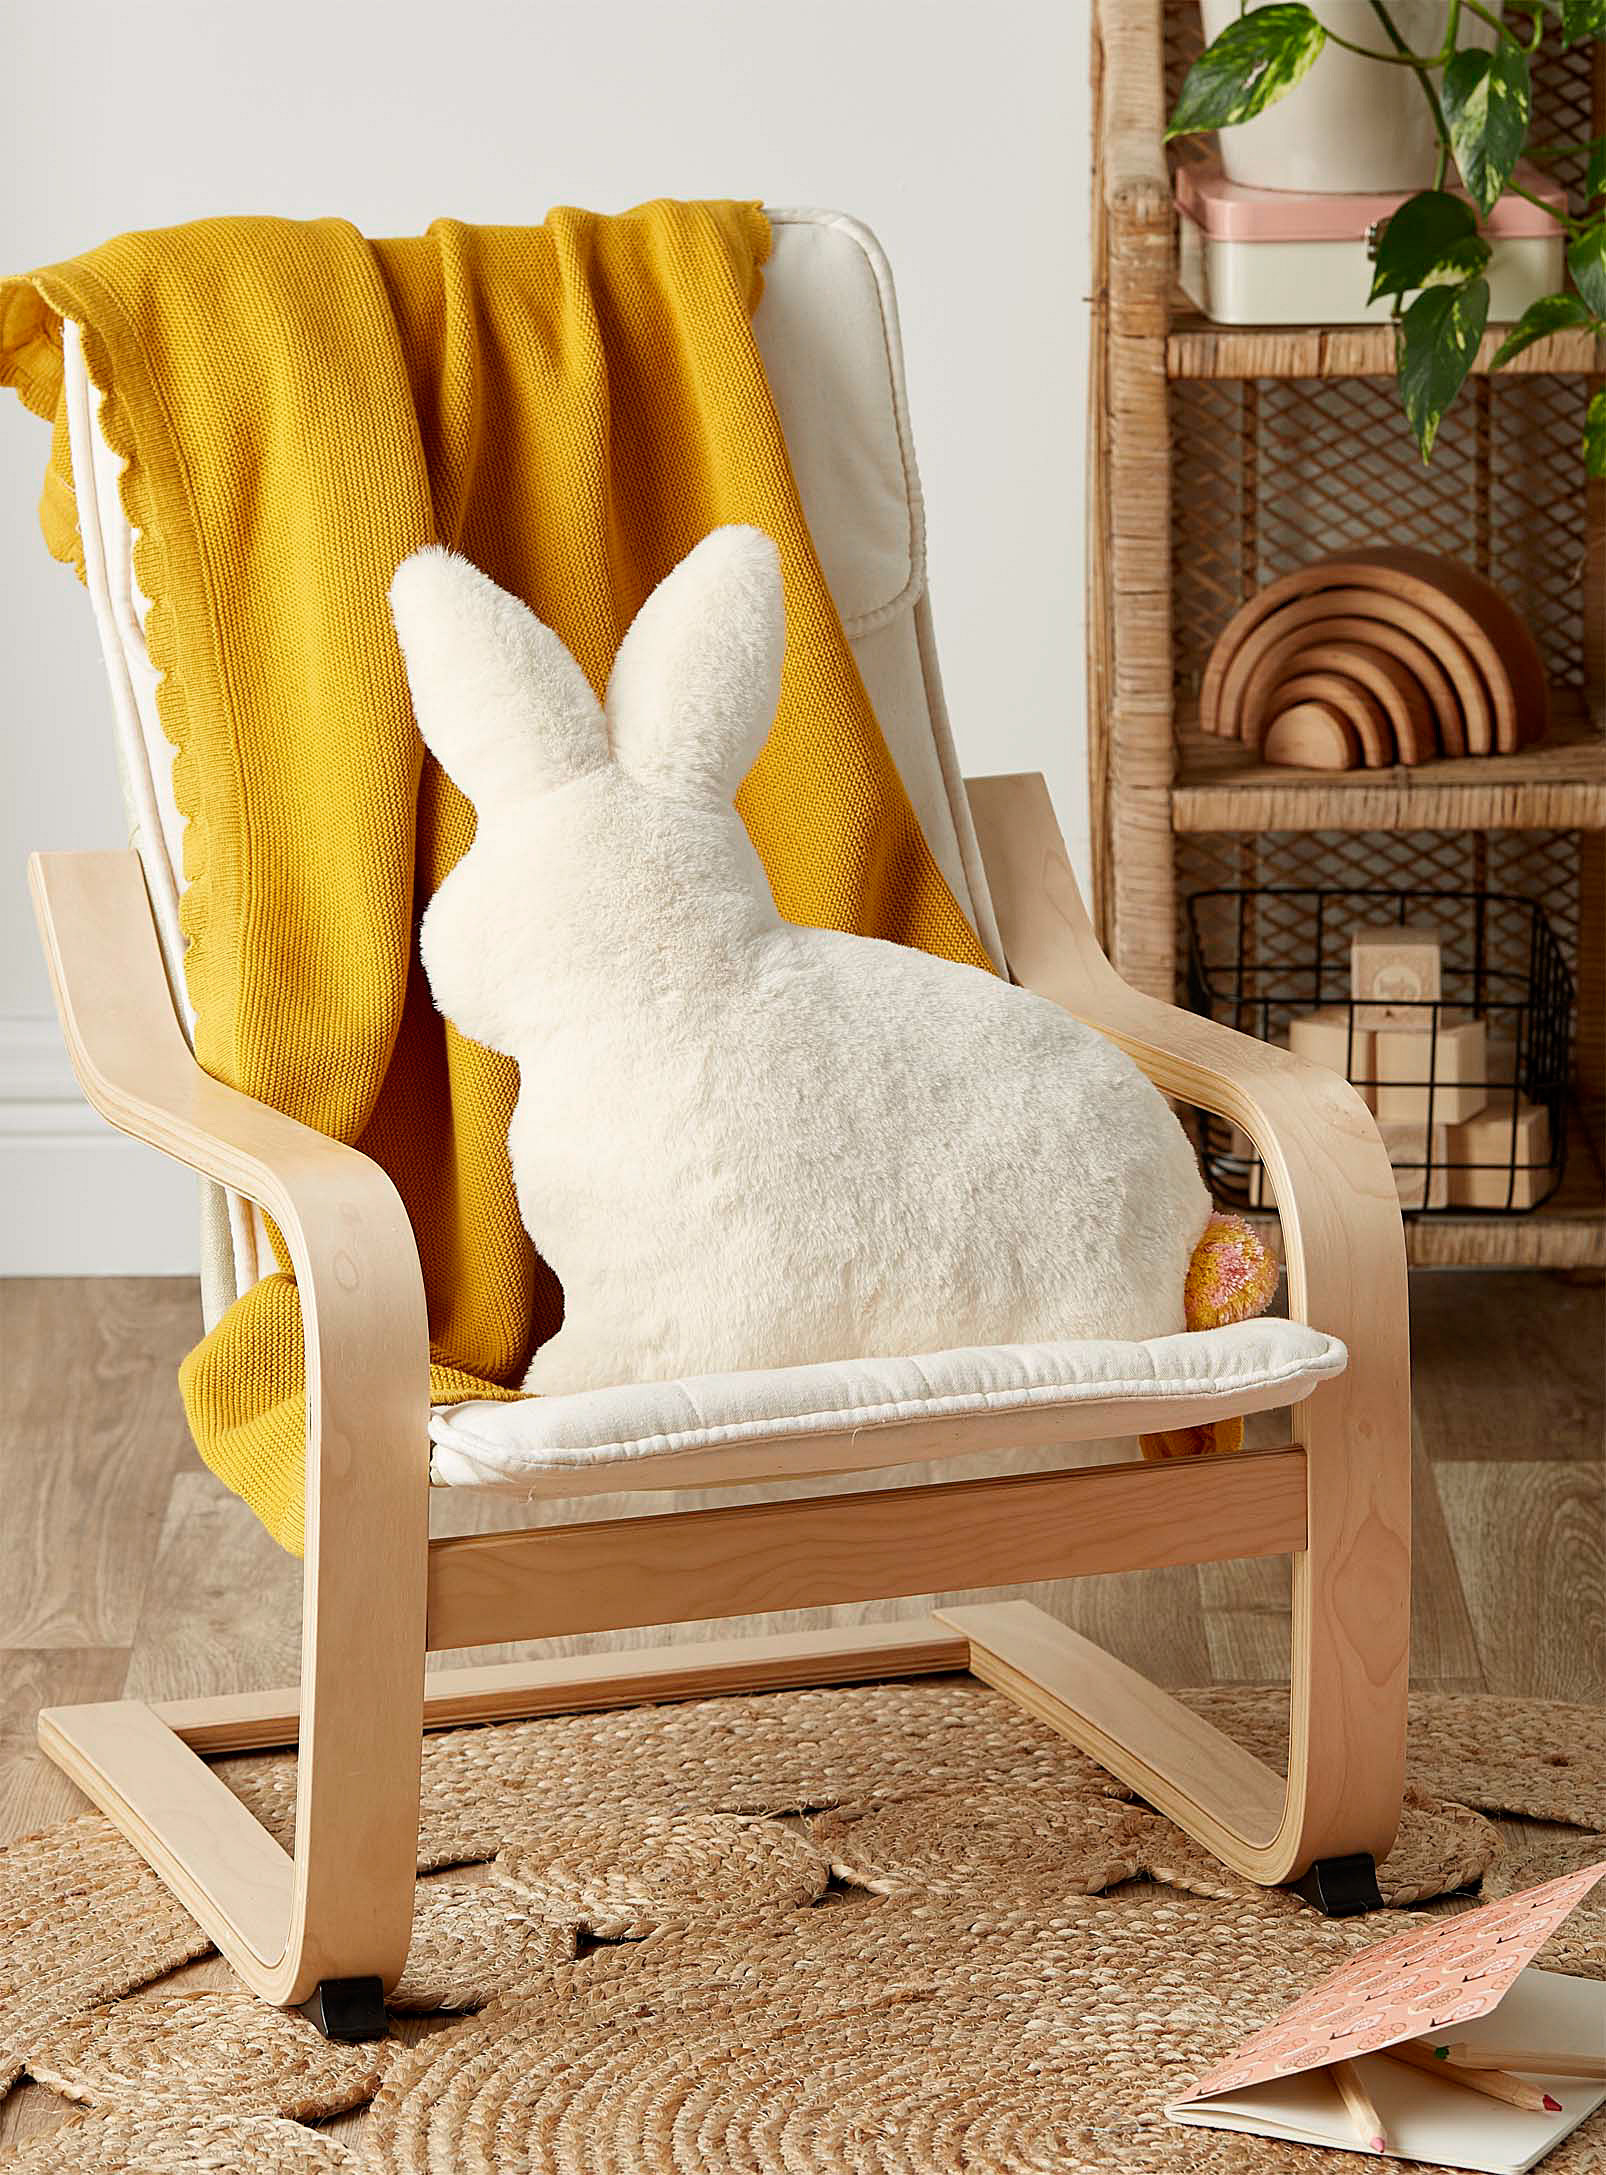 the bunny cushion on a chair